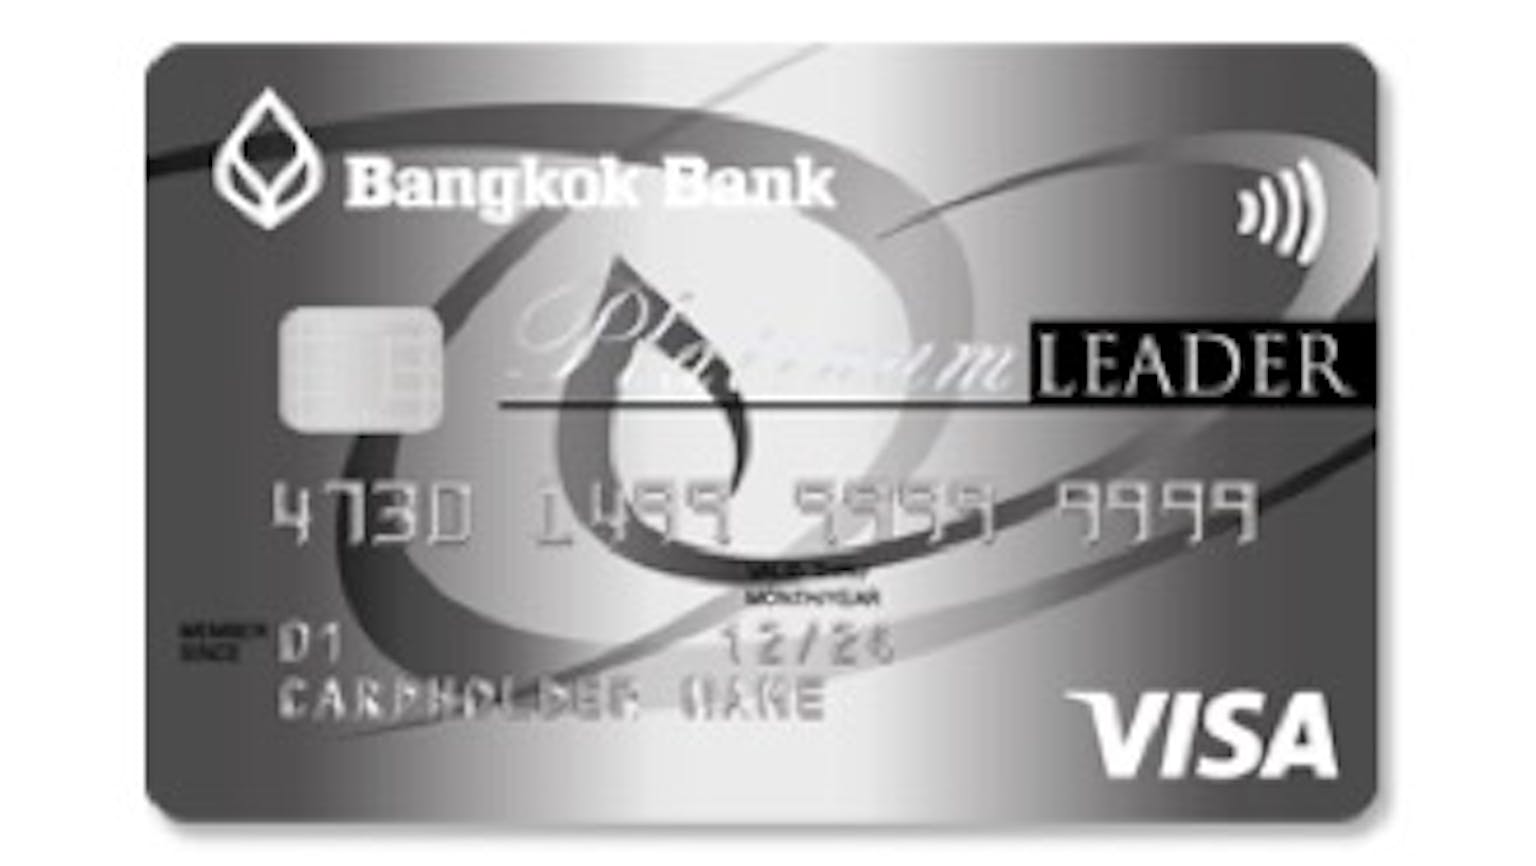 บัตรผู้นำ แพลทินัม ธนาคารกรุงเทพ